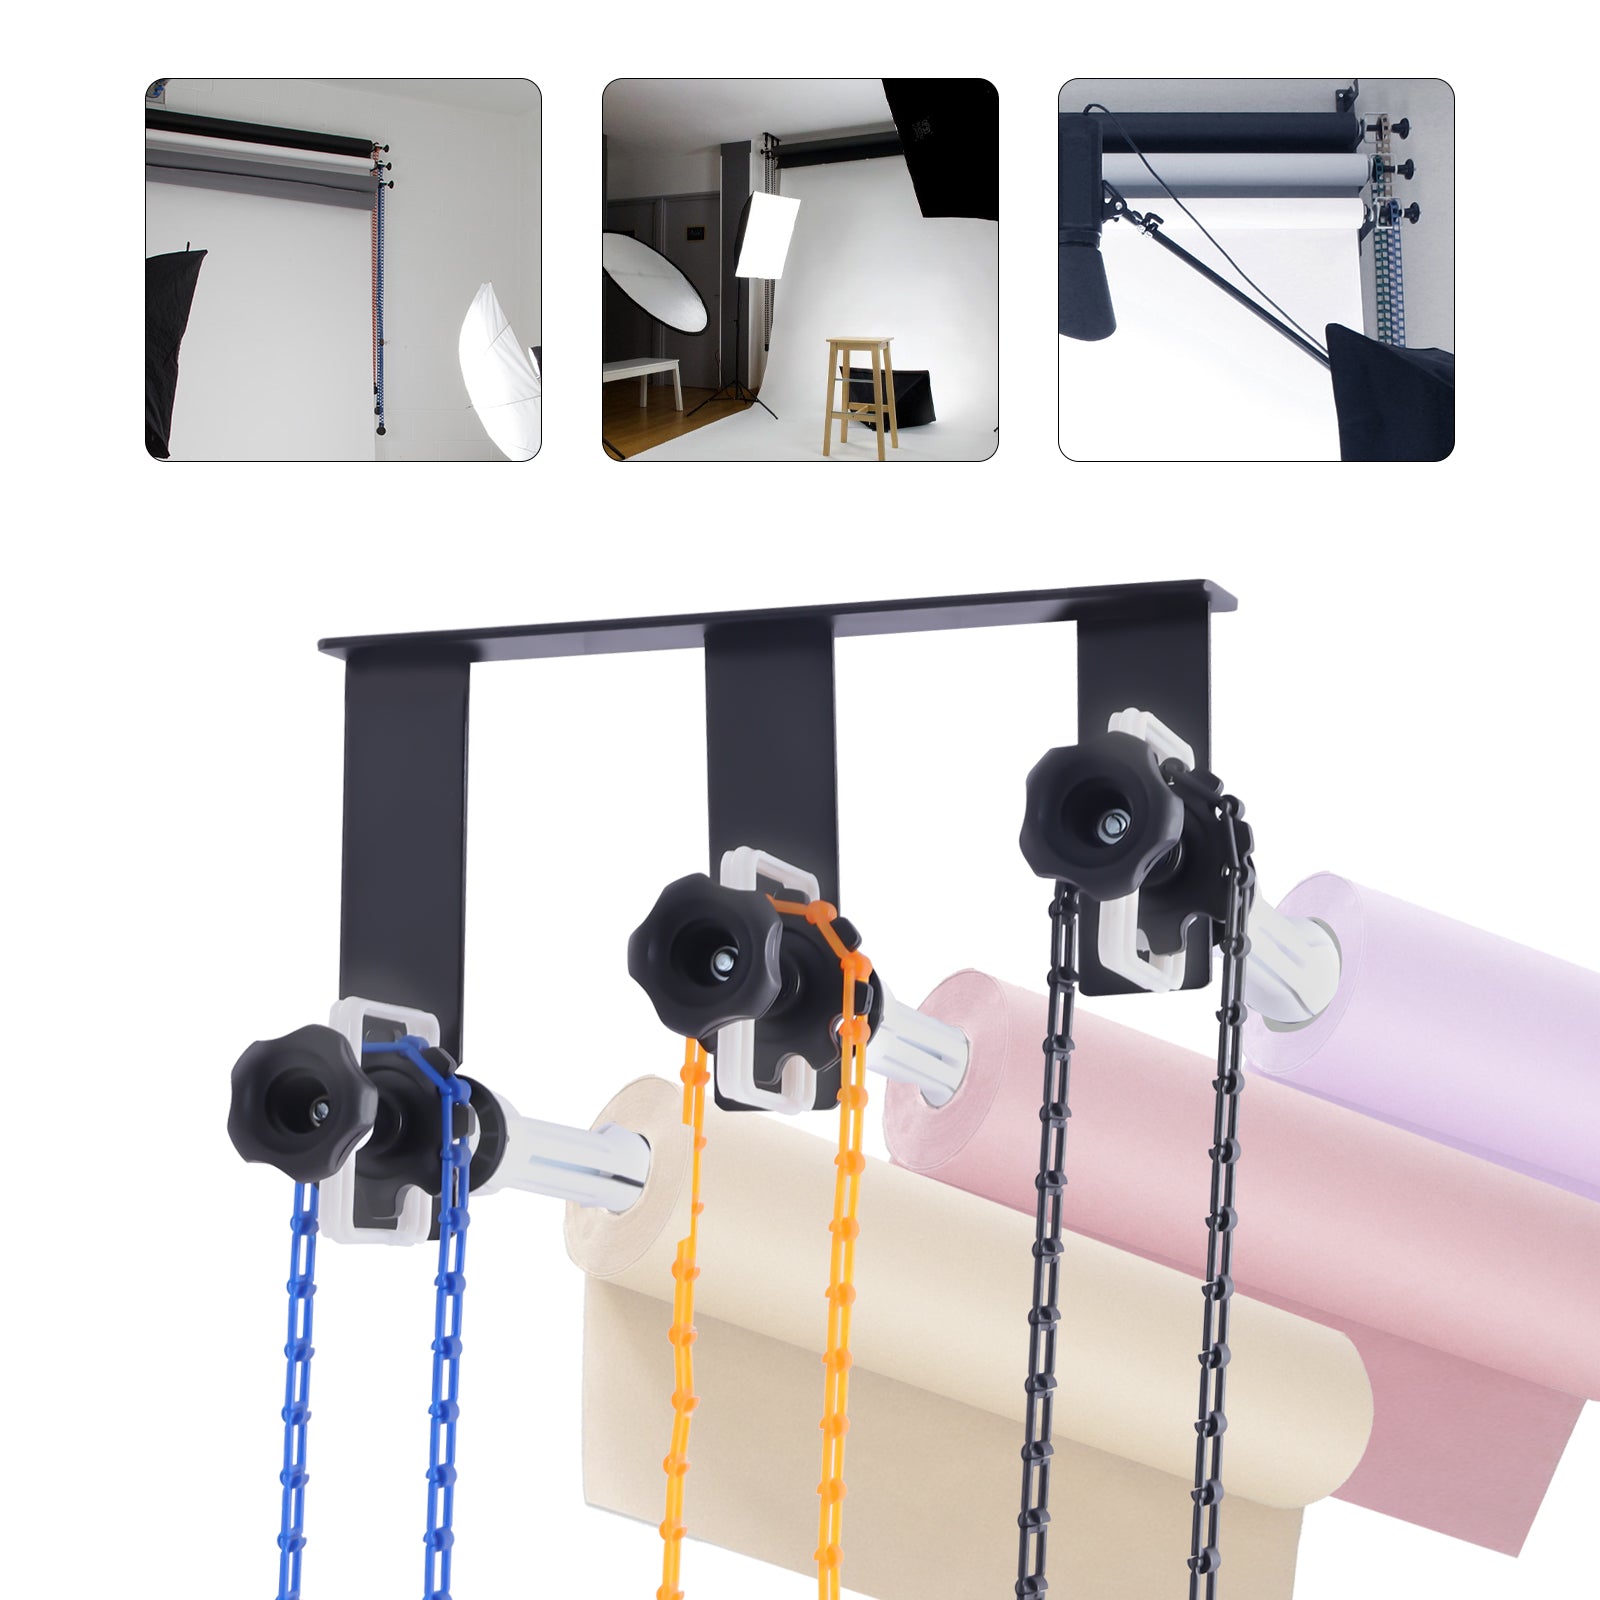 Sistema di support manuale per fondale fotografico con montaggio a parete a 3 rulli, incluse sei (6) barre di espansione, tre (3) catene